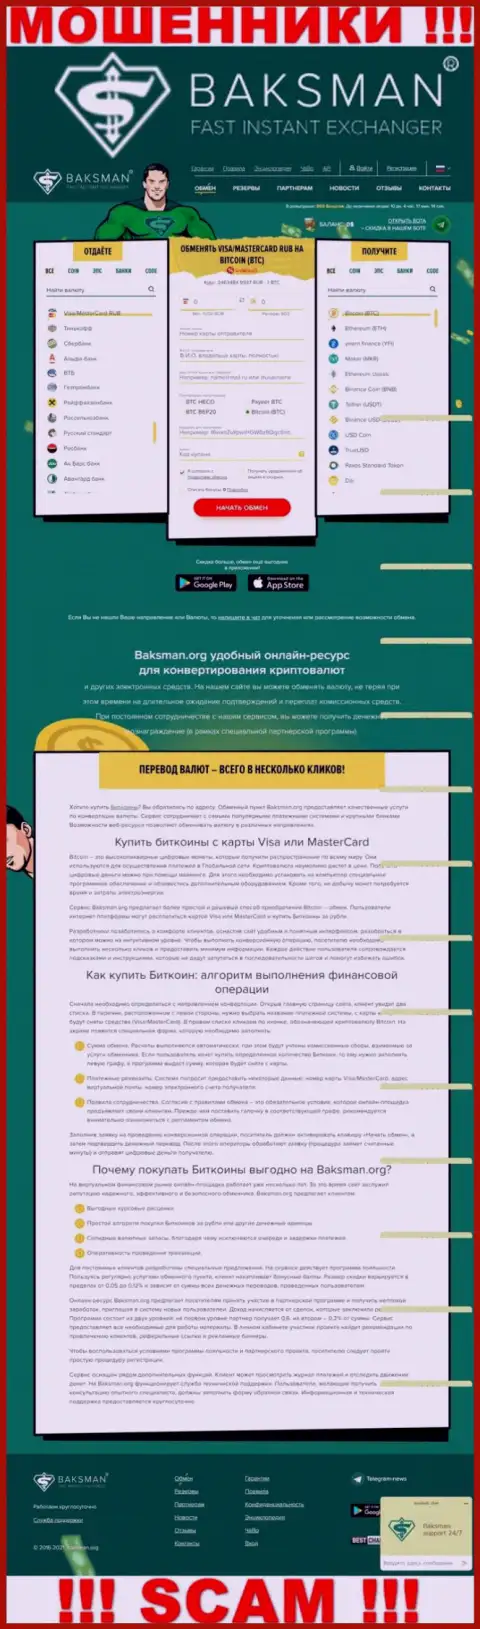 Внешний вид официального сайта жульнической конторы БаксМан Орг